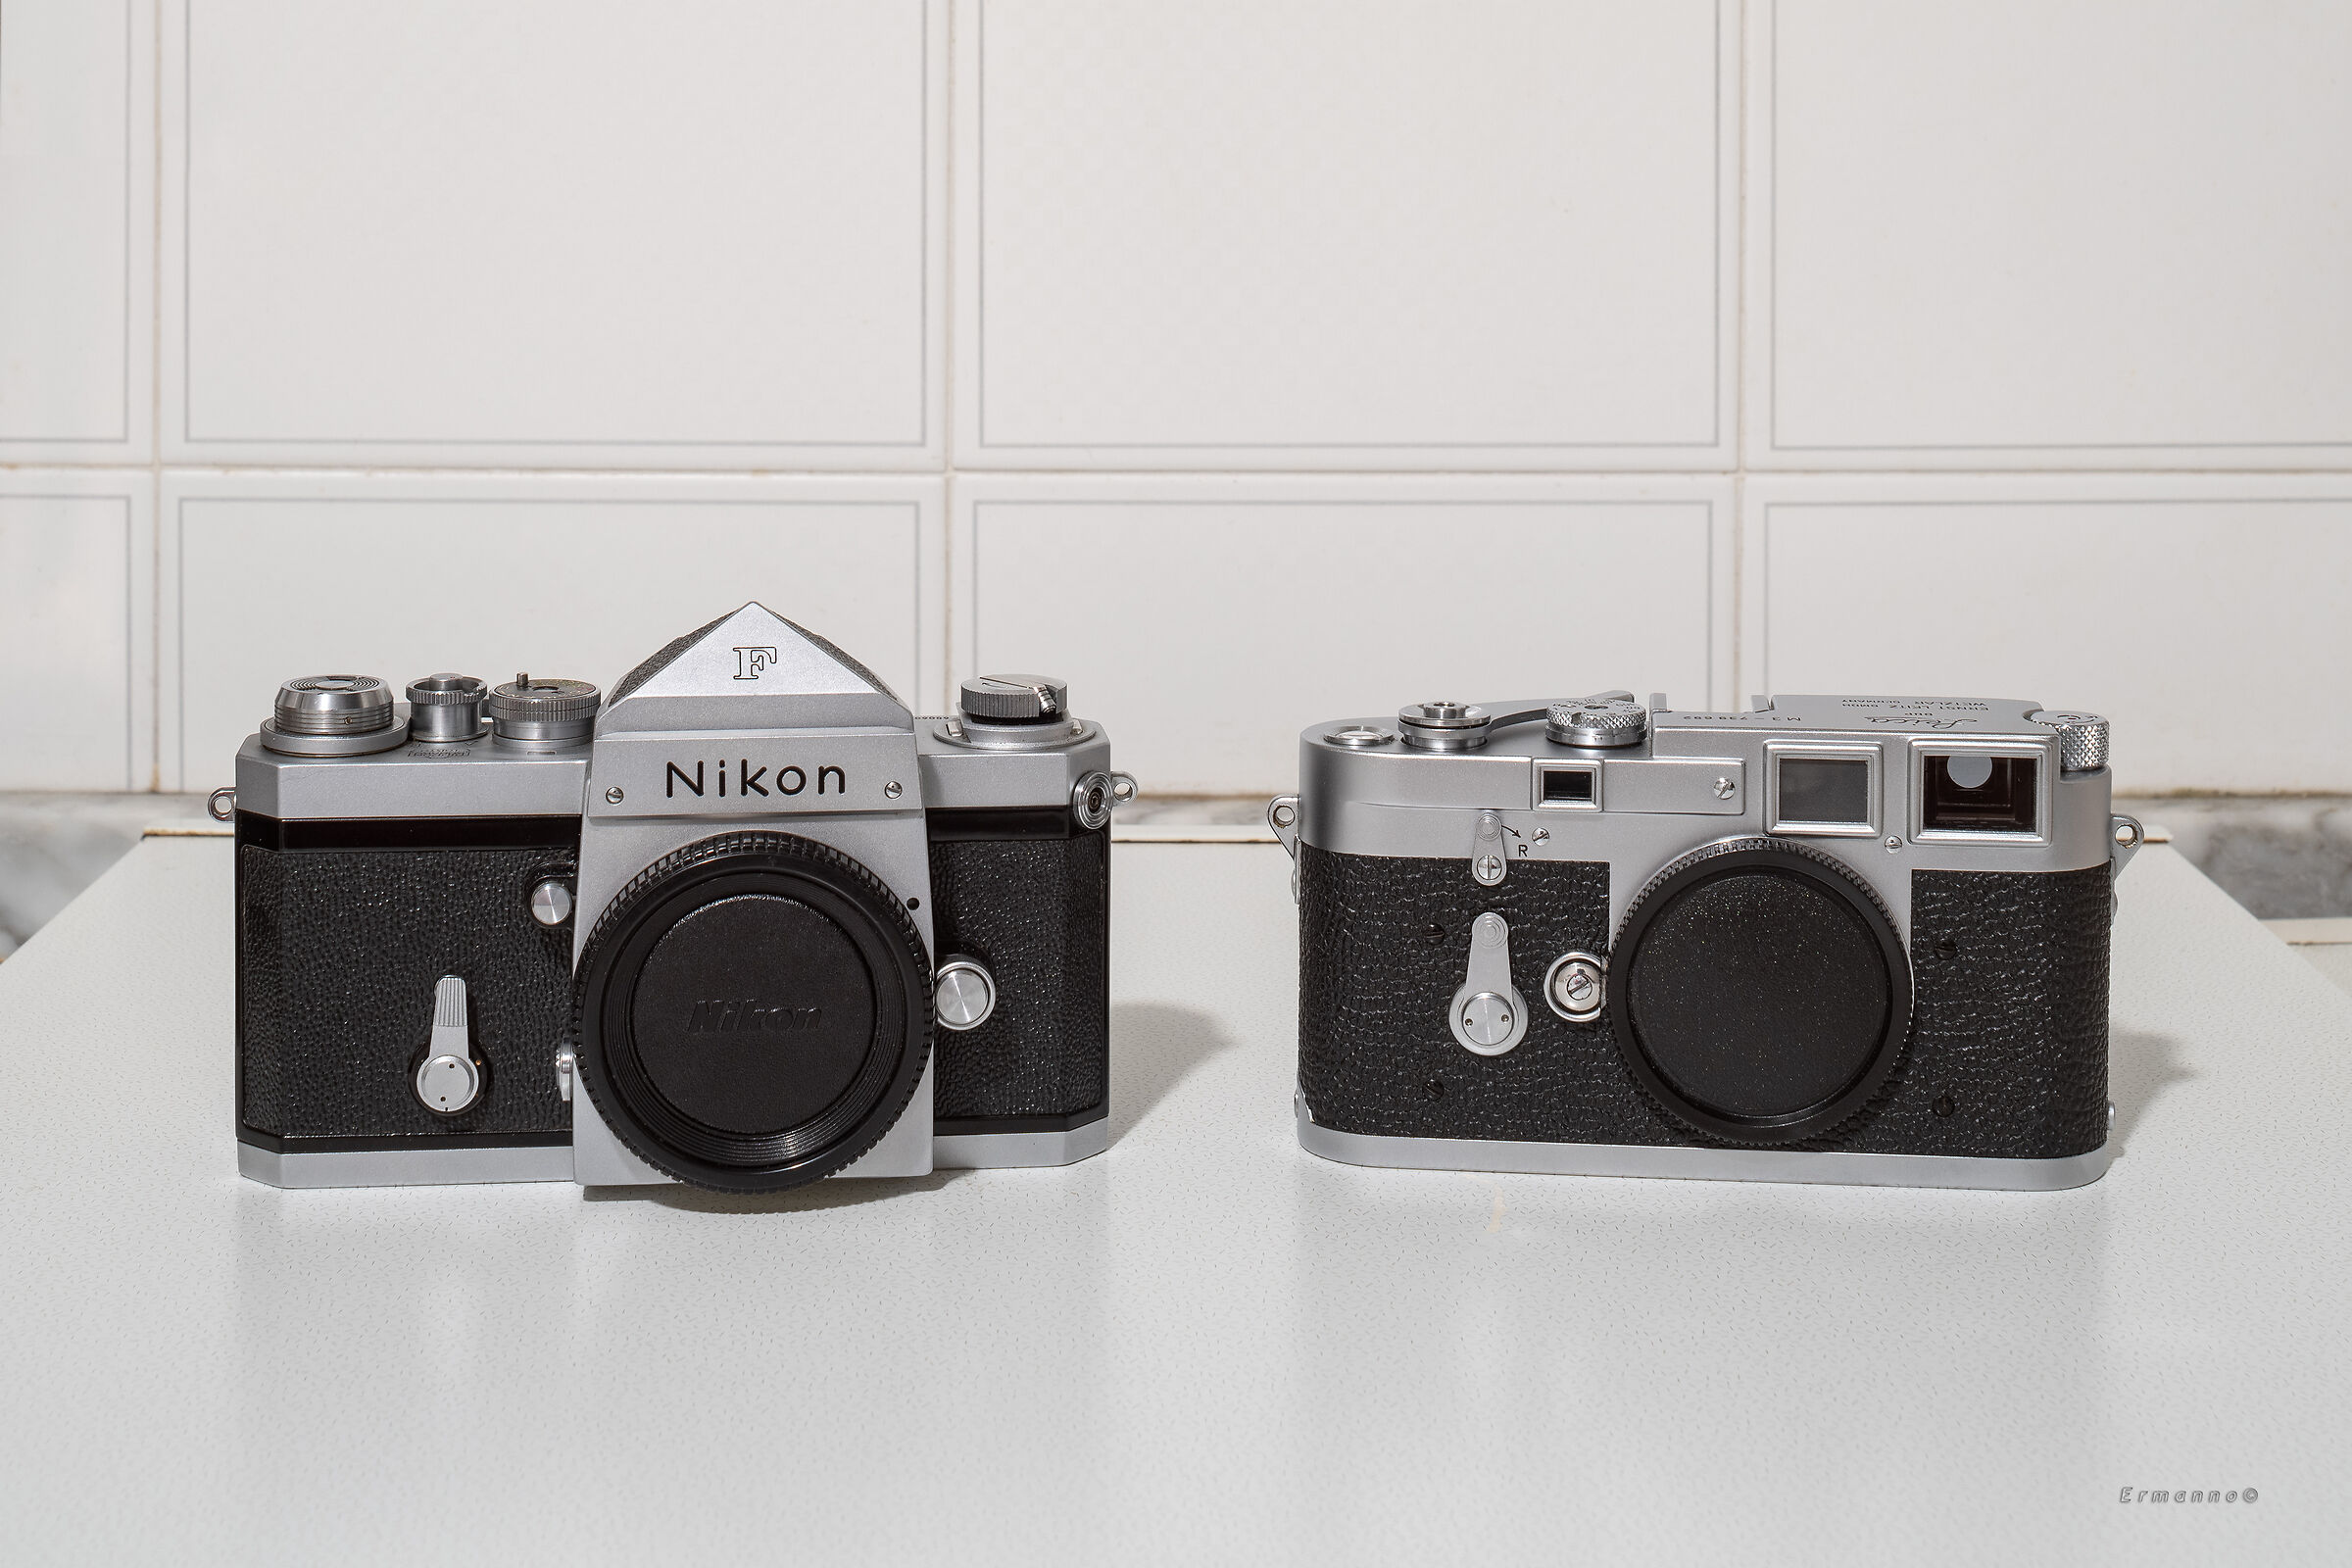 Nikon vs Leica...